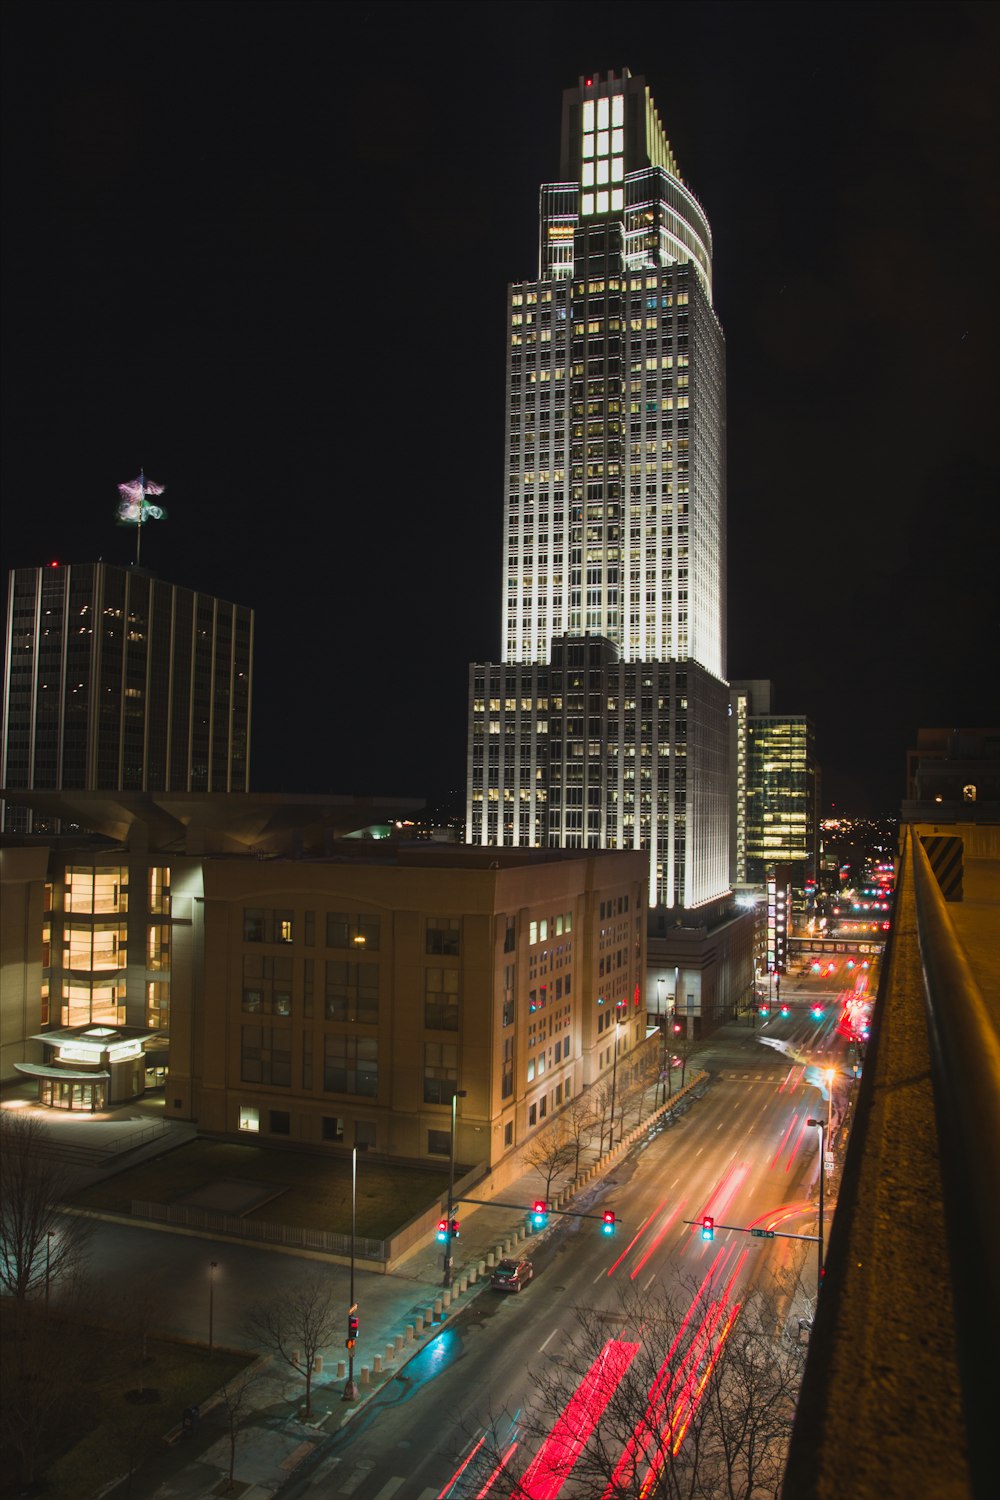 Photographie en accéléré de véhicules se déplaçant sur la route près d’un immeuble de grande hauteur sous un ciel nocturne noir